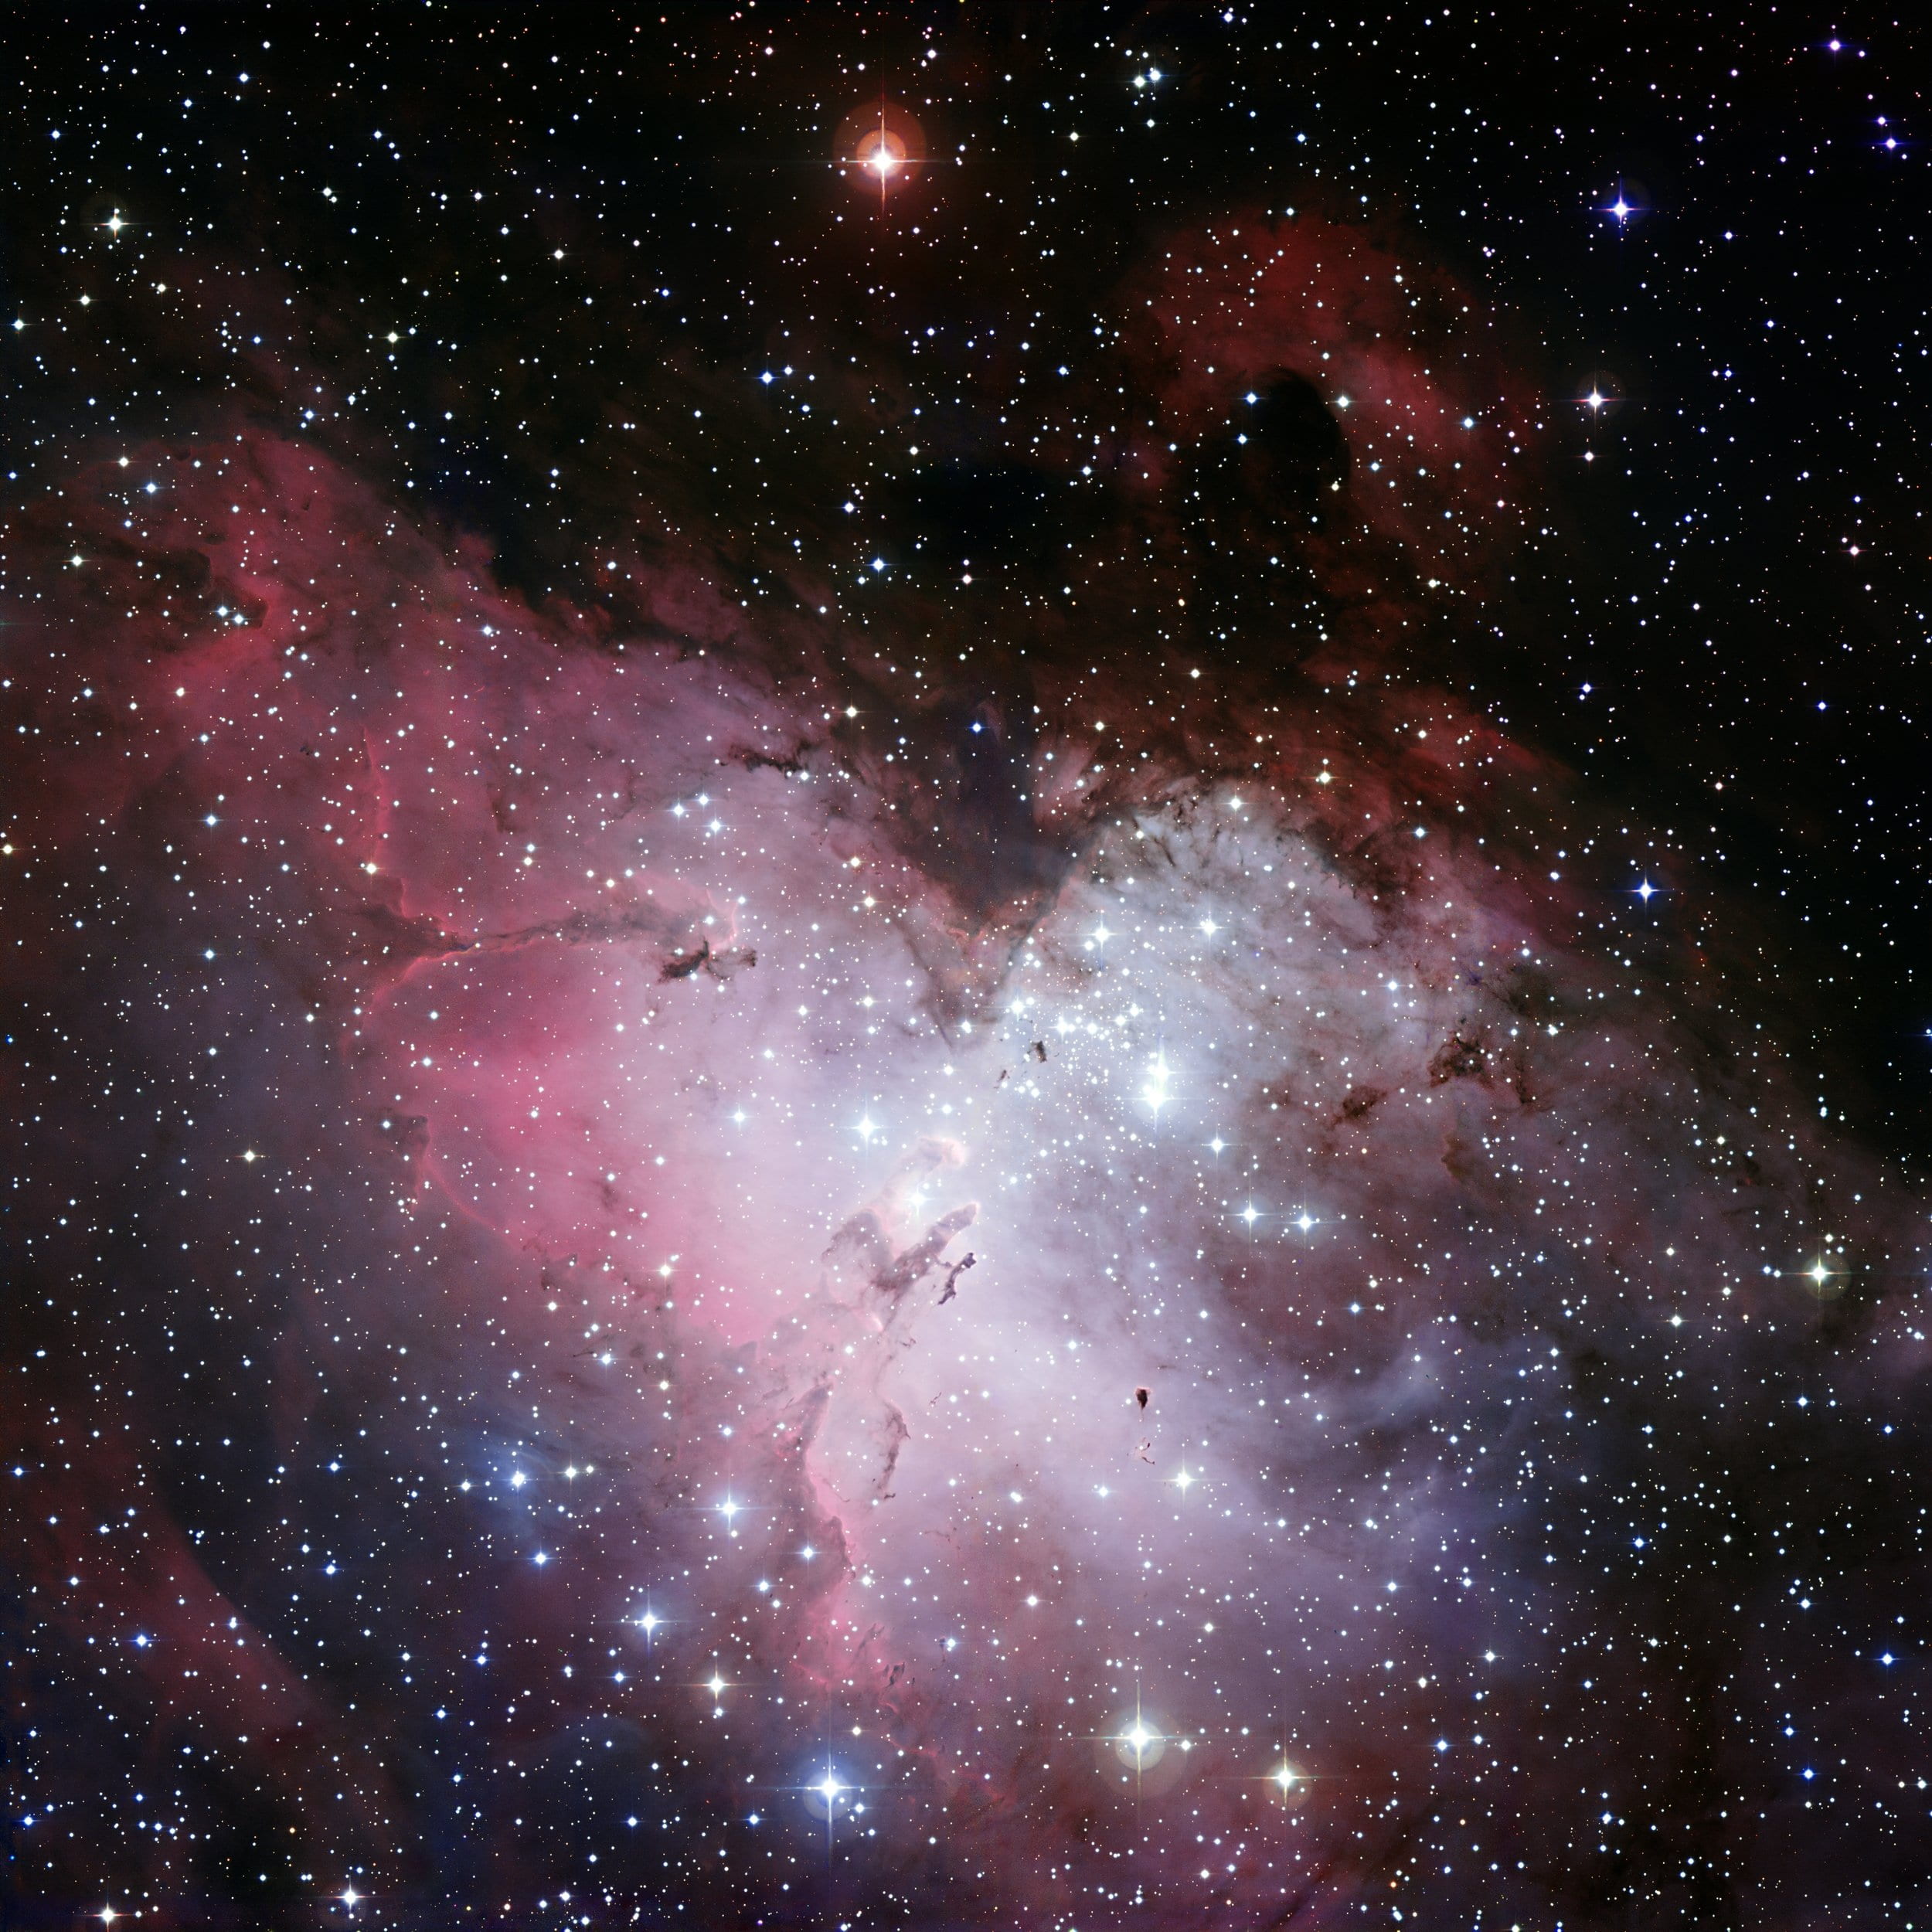 galaxy photo, eagle nebula, ic 4703, fog, open sternhaufen, star clusters